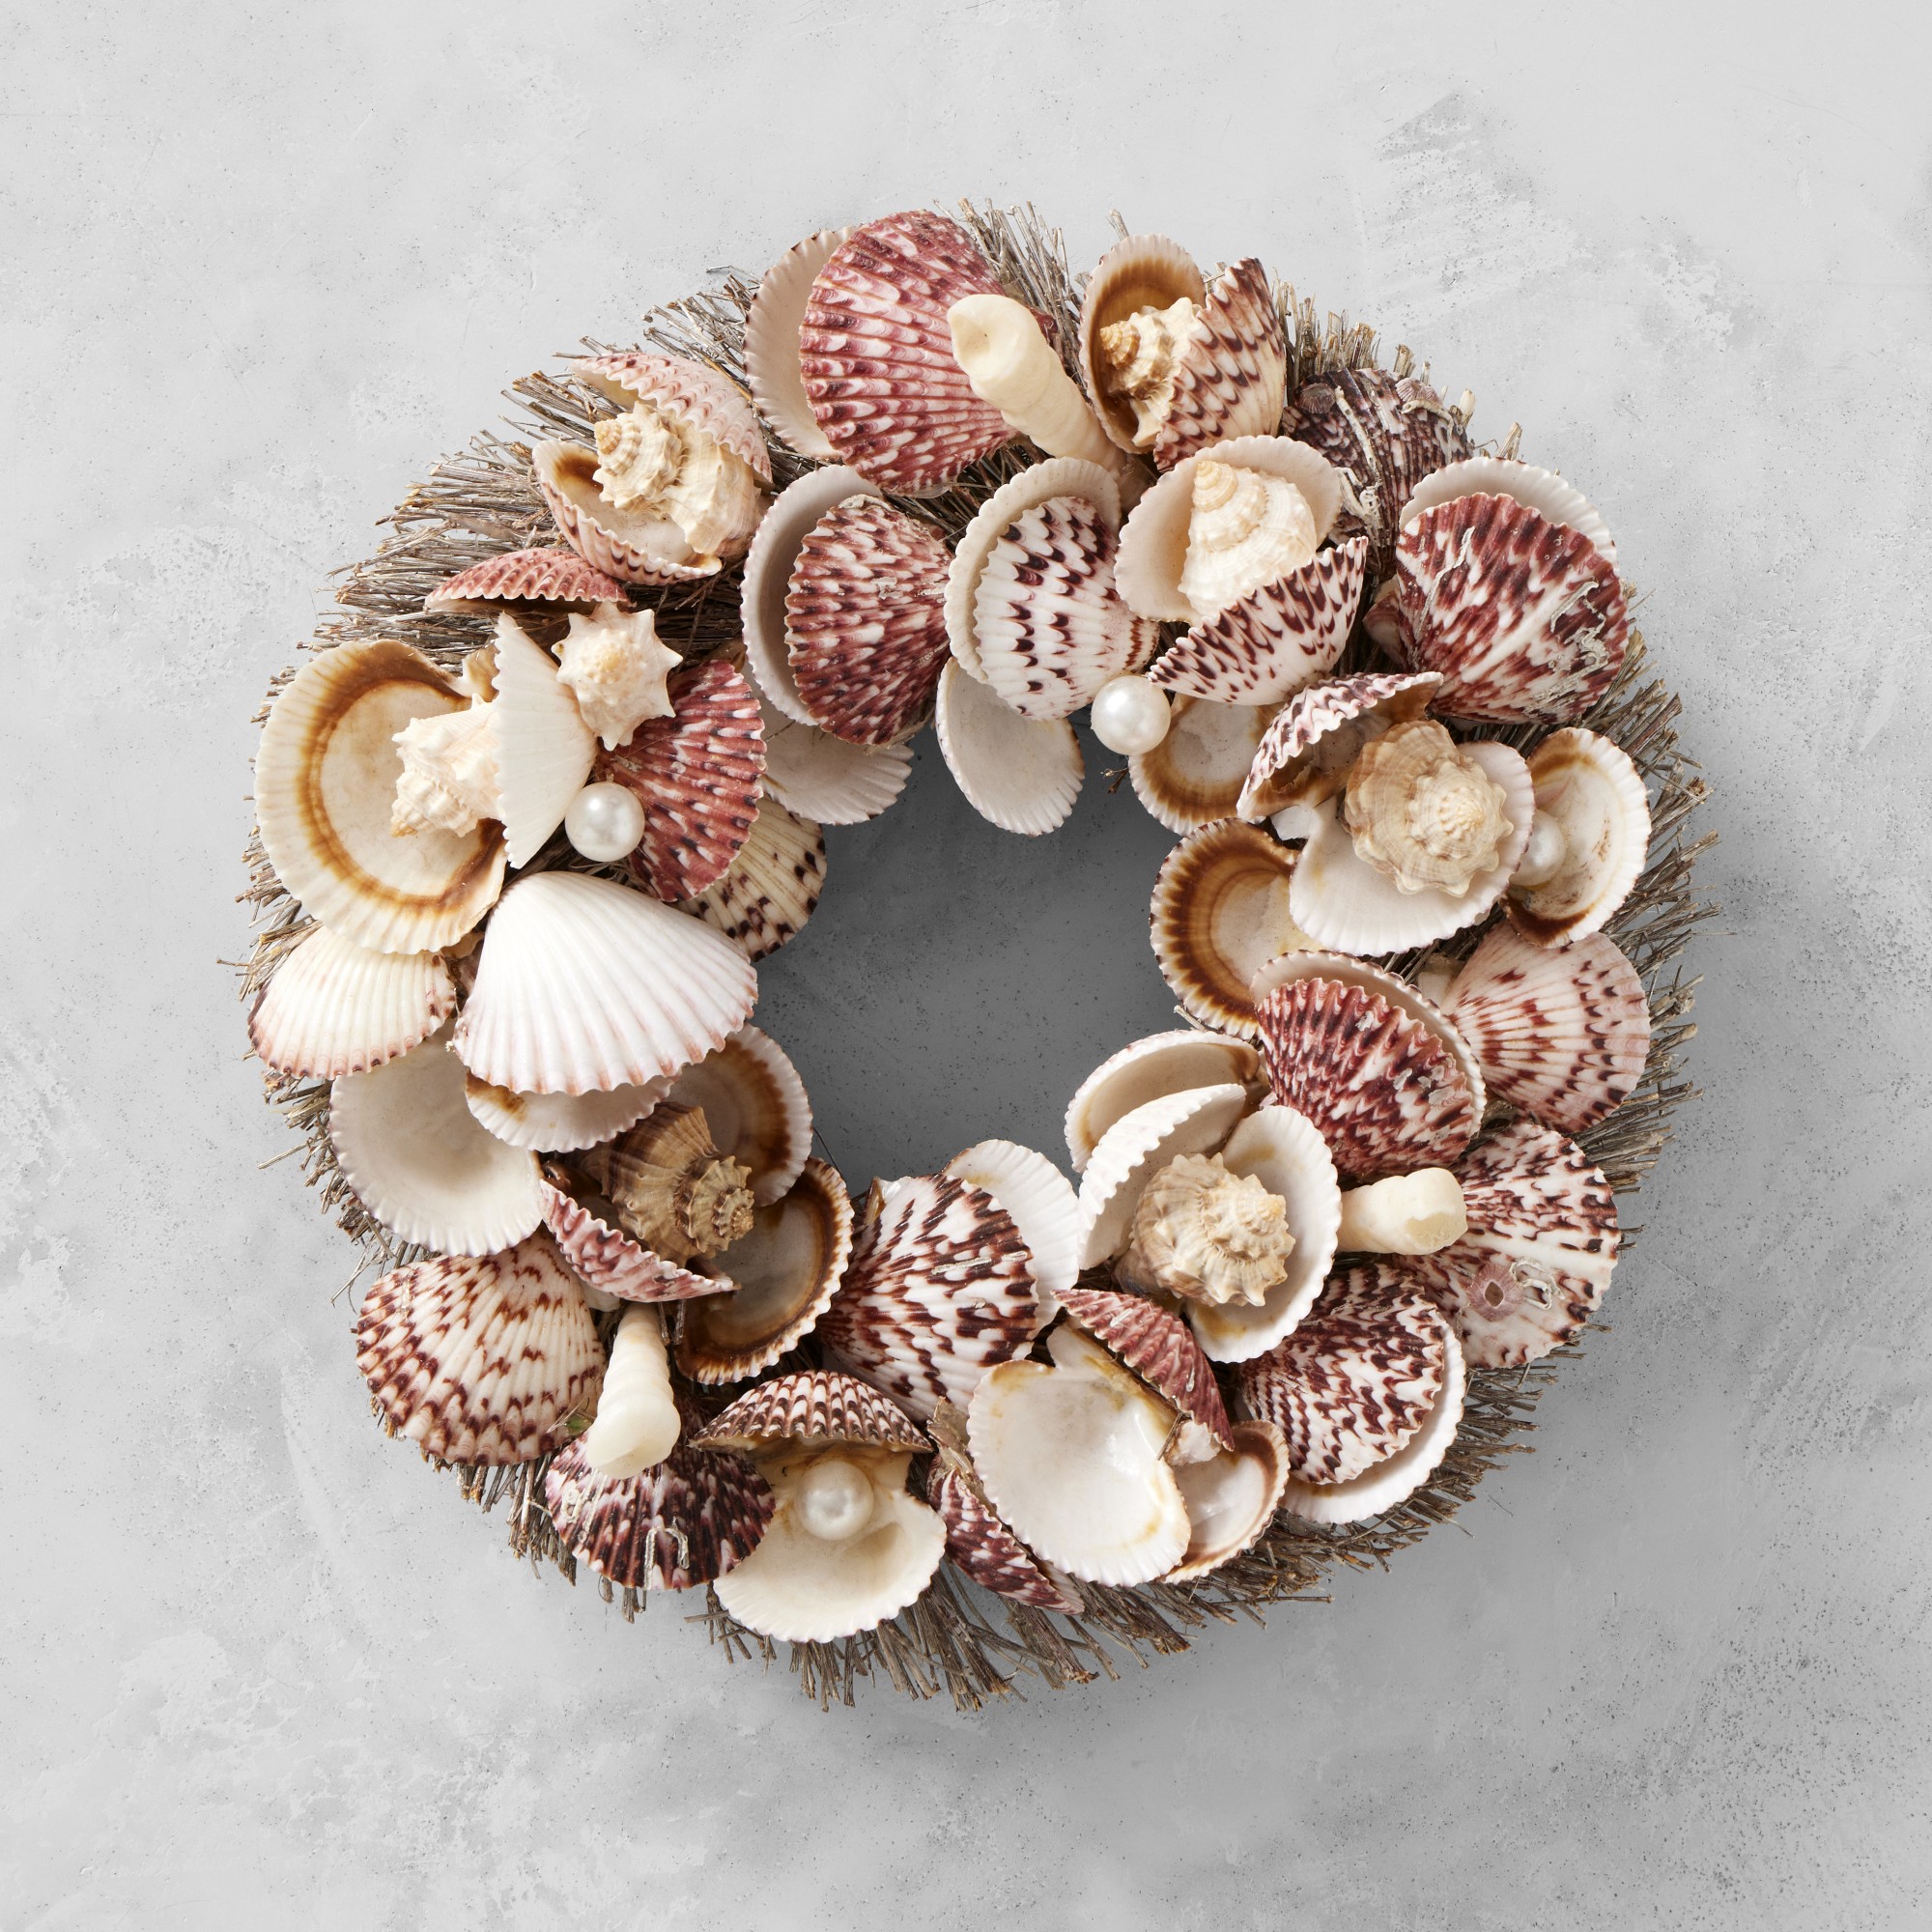 Shells & Pearls Wreath